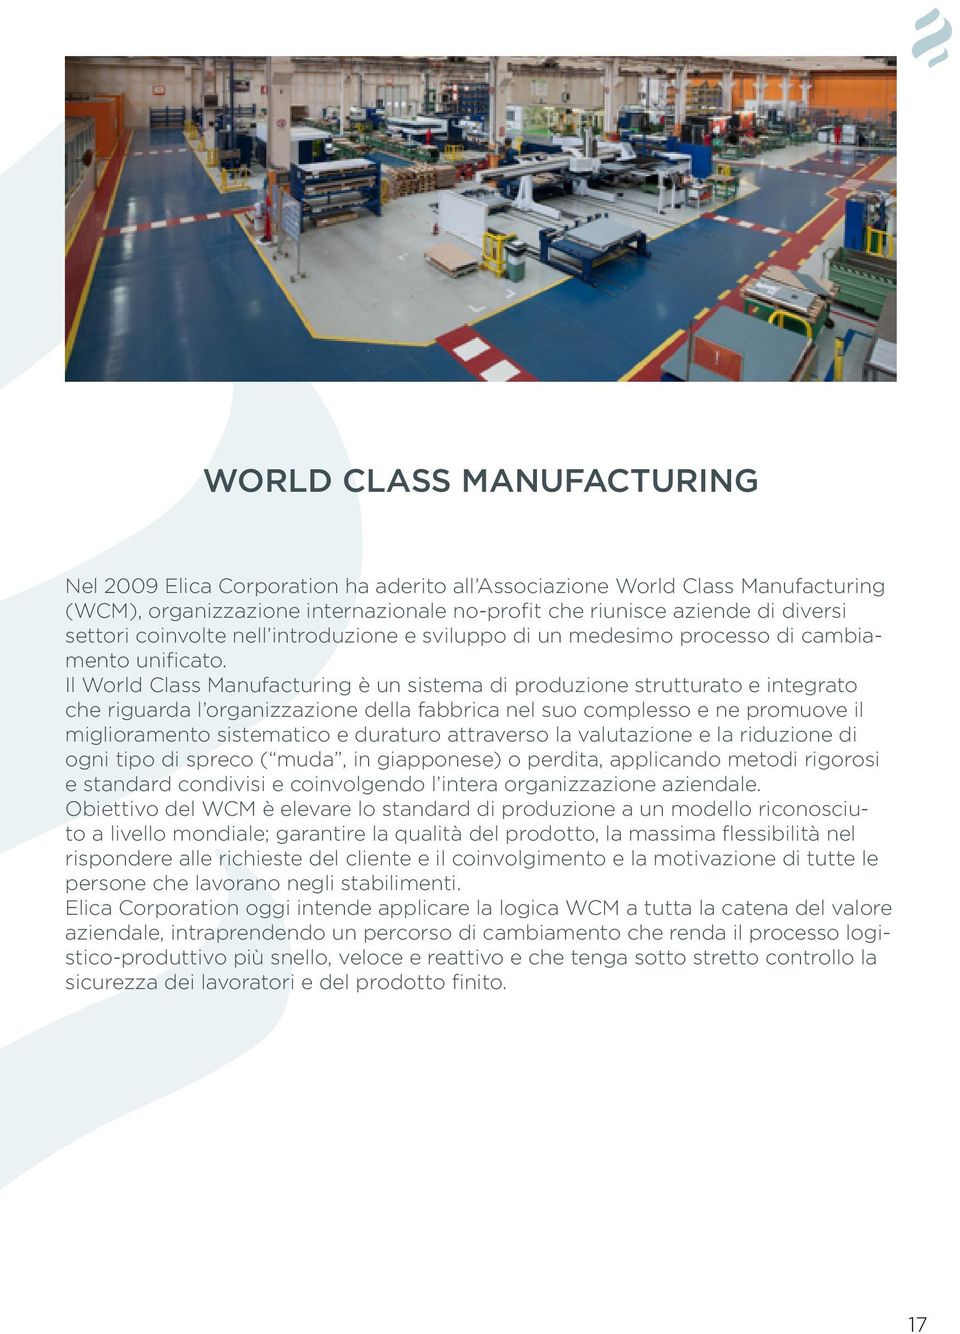 Il World Class Manufacturing è un sistema di produzione strutturato e integrato che riguarda l organizzazione della fabbrica nel suo complesso e ne promuove il miglioramento sistematico e duraturo